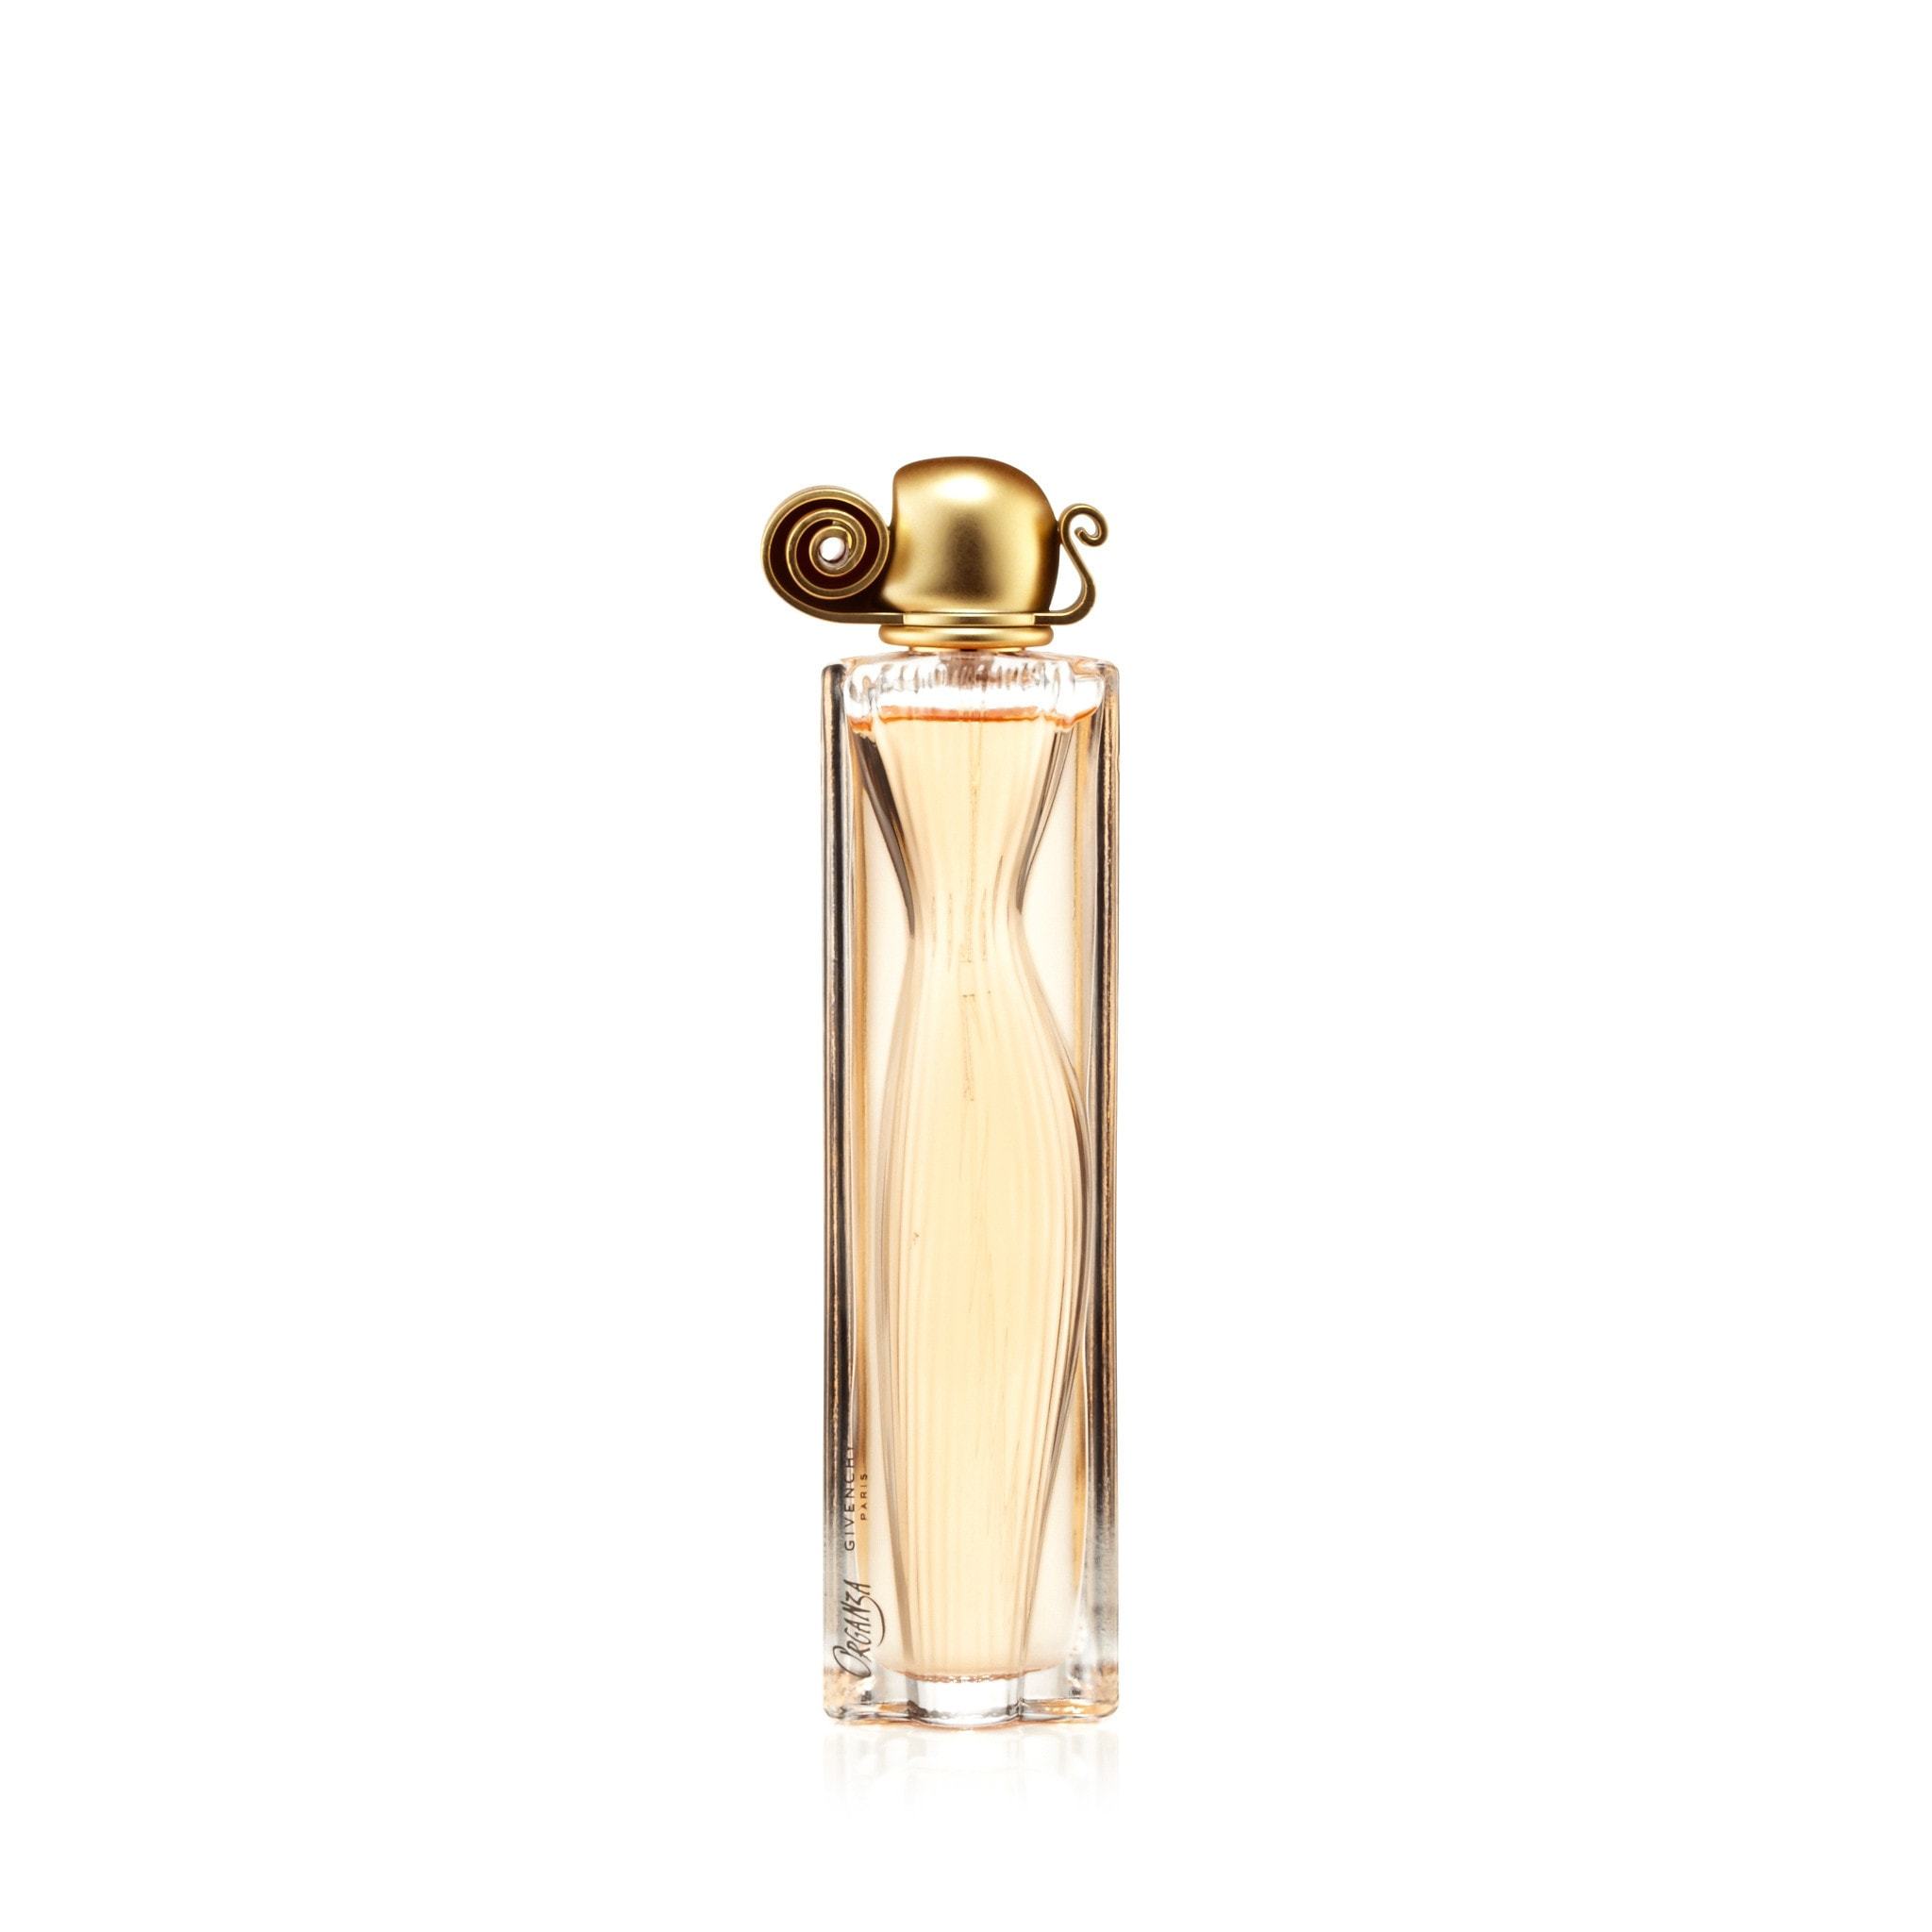 Givenchy ORGANZA LACE EDITION 2012 eau de parfum